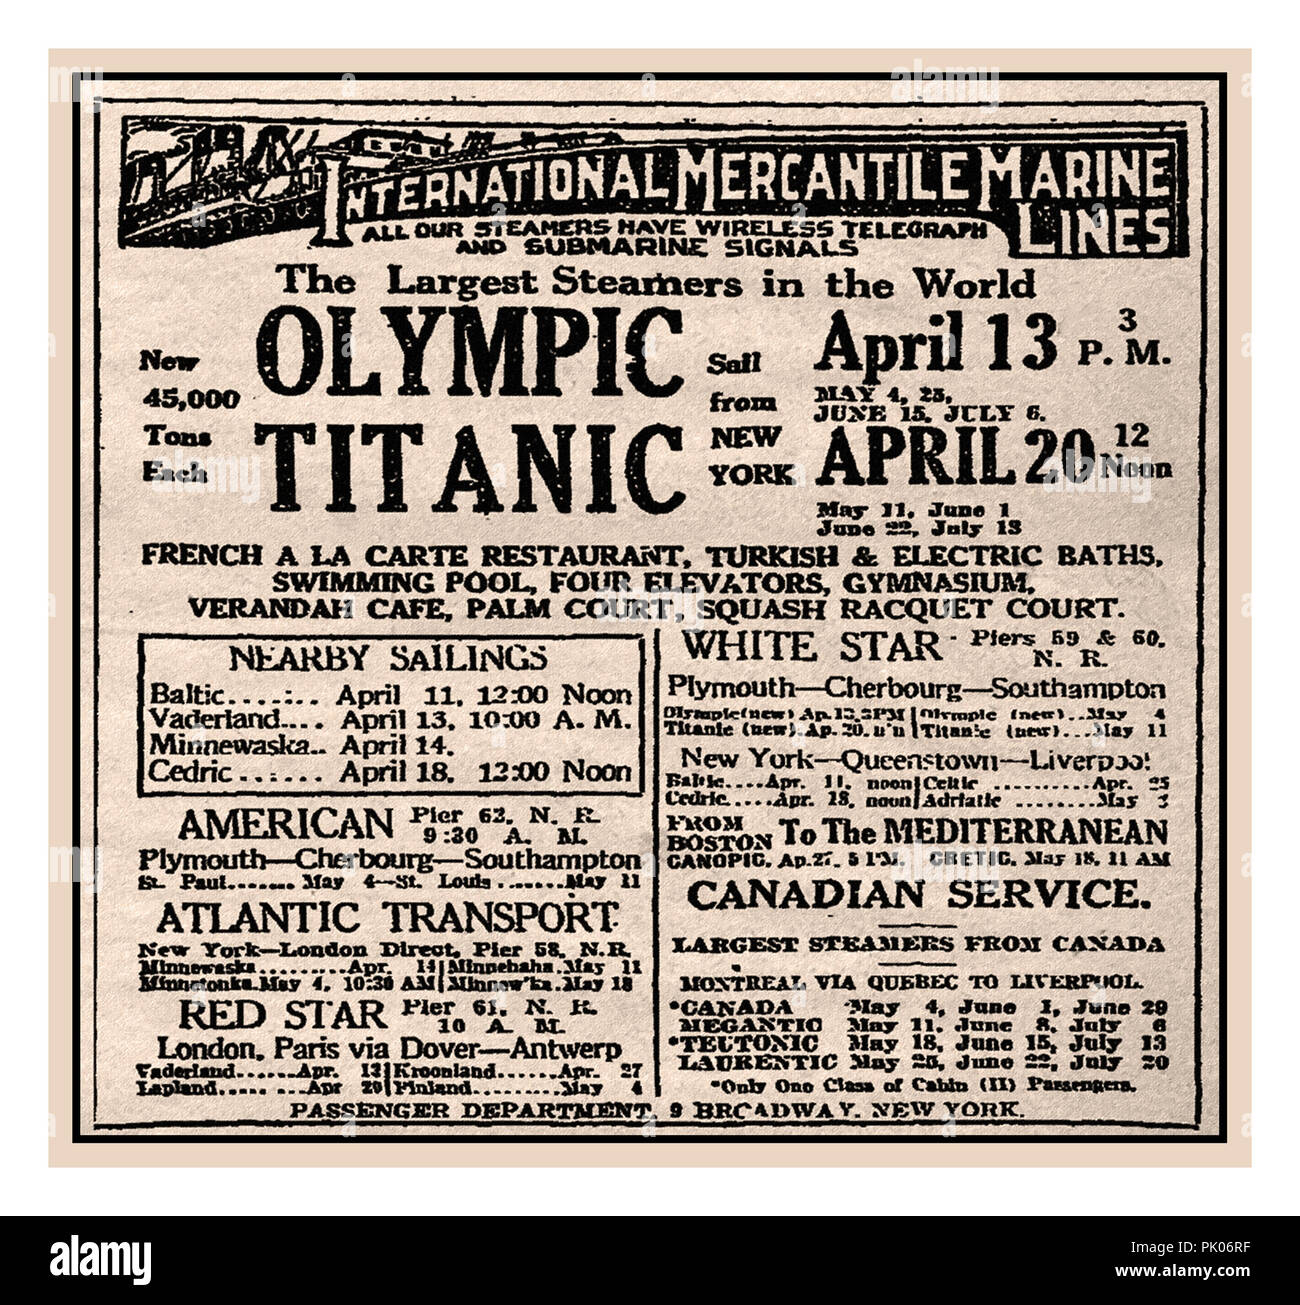 TITANIC 1912 RMS giornale pubblicitario TITANIC a New York Times per il primo viaggio inaugurale verso est navigazione transatlantica di Titanic da New York all'Europa con partenza a mezzogiorno del 20 aprile 1912. Questa navigazione in programma purtroppo non ha avuto luogo. Il Titanic fu tragicamente perduto il 15 aprile 1912 Foto Stock